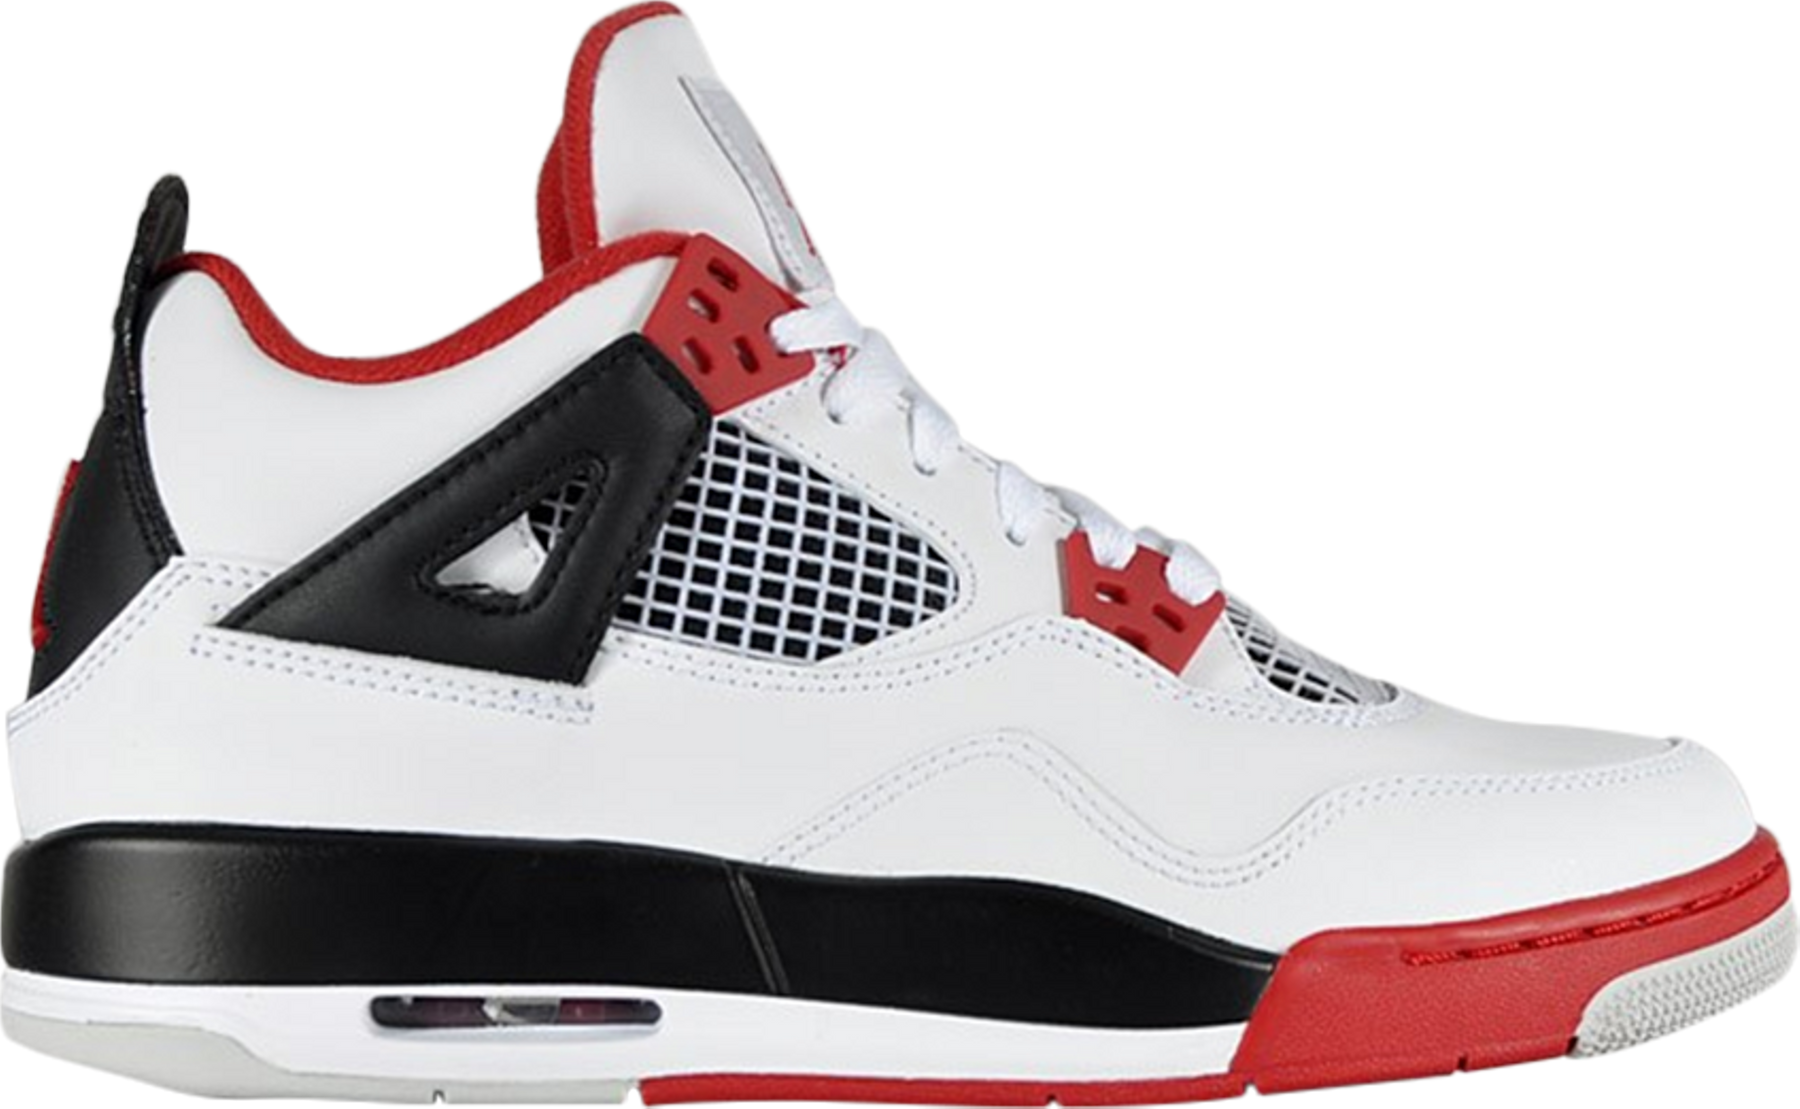 Jordan 4 Retro Fire Red 2012 (GS) (No Box)